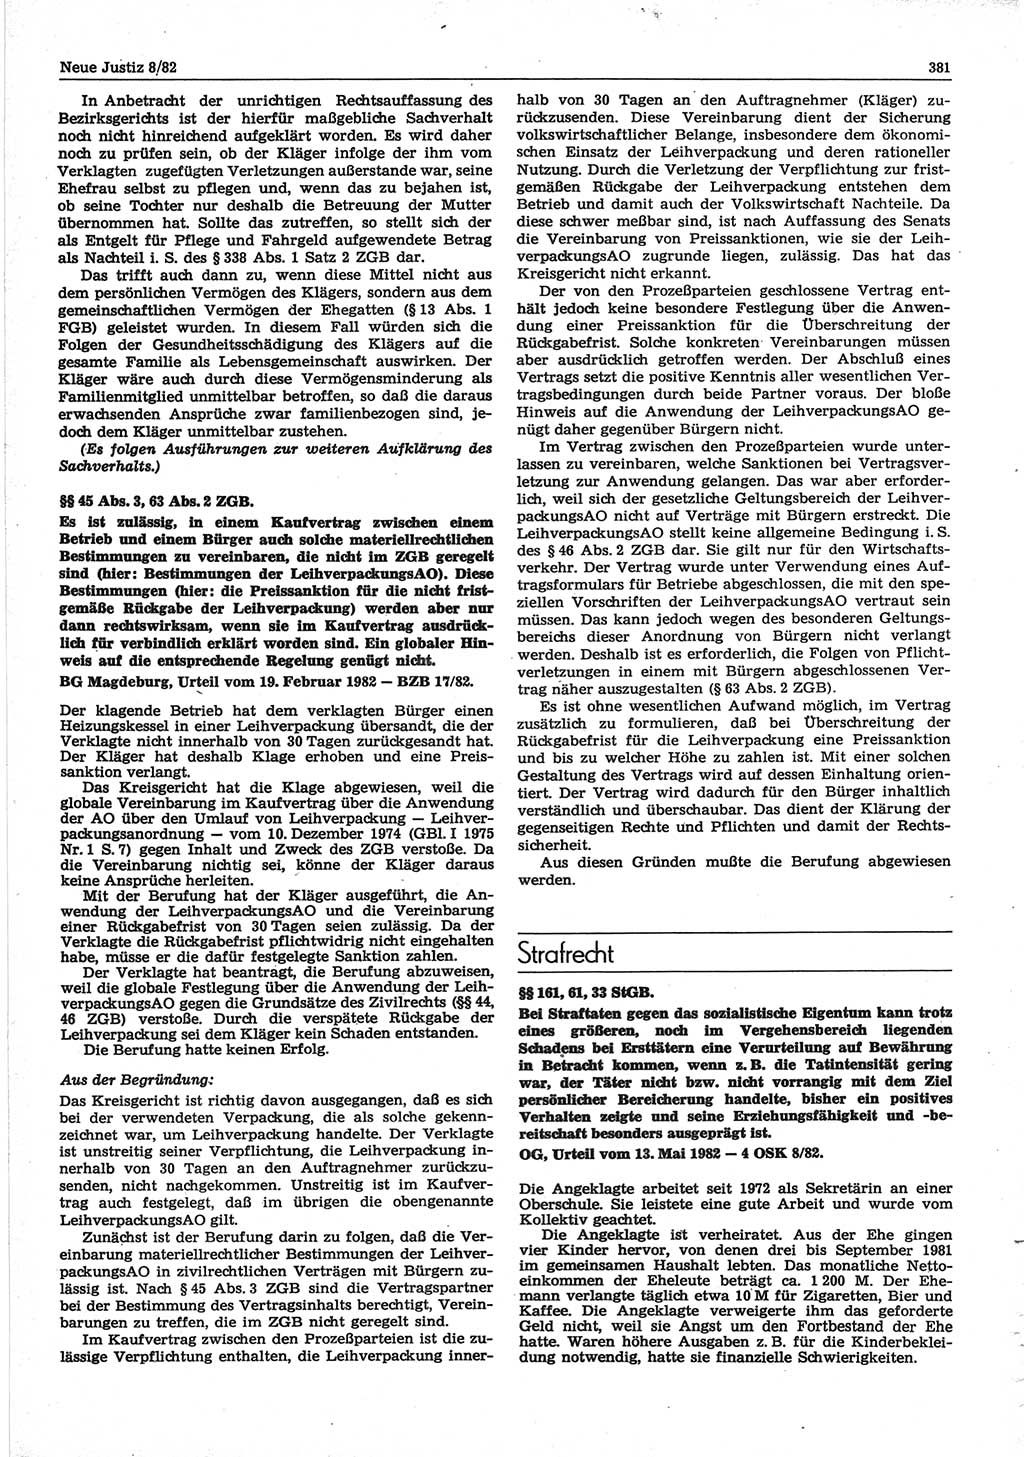 Neue Justiz (NJ), Zeitschrift für sozialistisches Recht und Gesetzlichkeit [Deutsche Demokratische Republik (DDR)], 36. Jahrgang 1982, Seite 381 (NJ DDR 1982, S. 381)